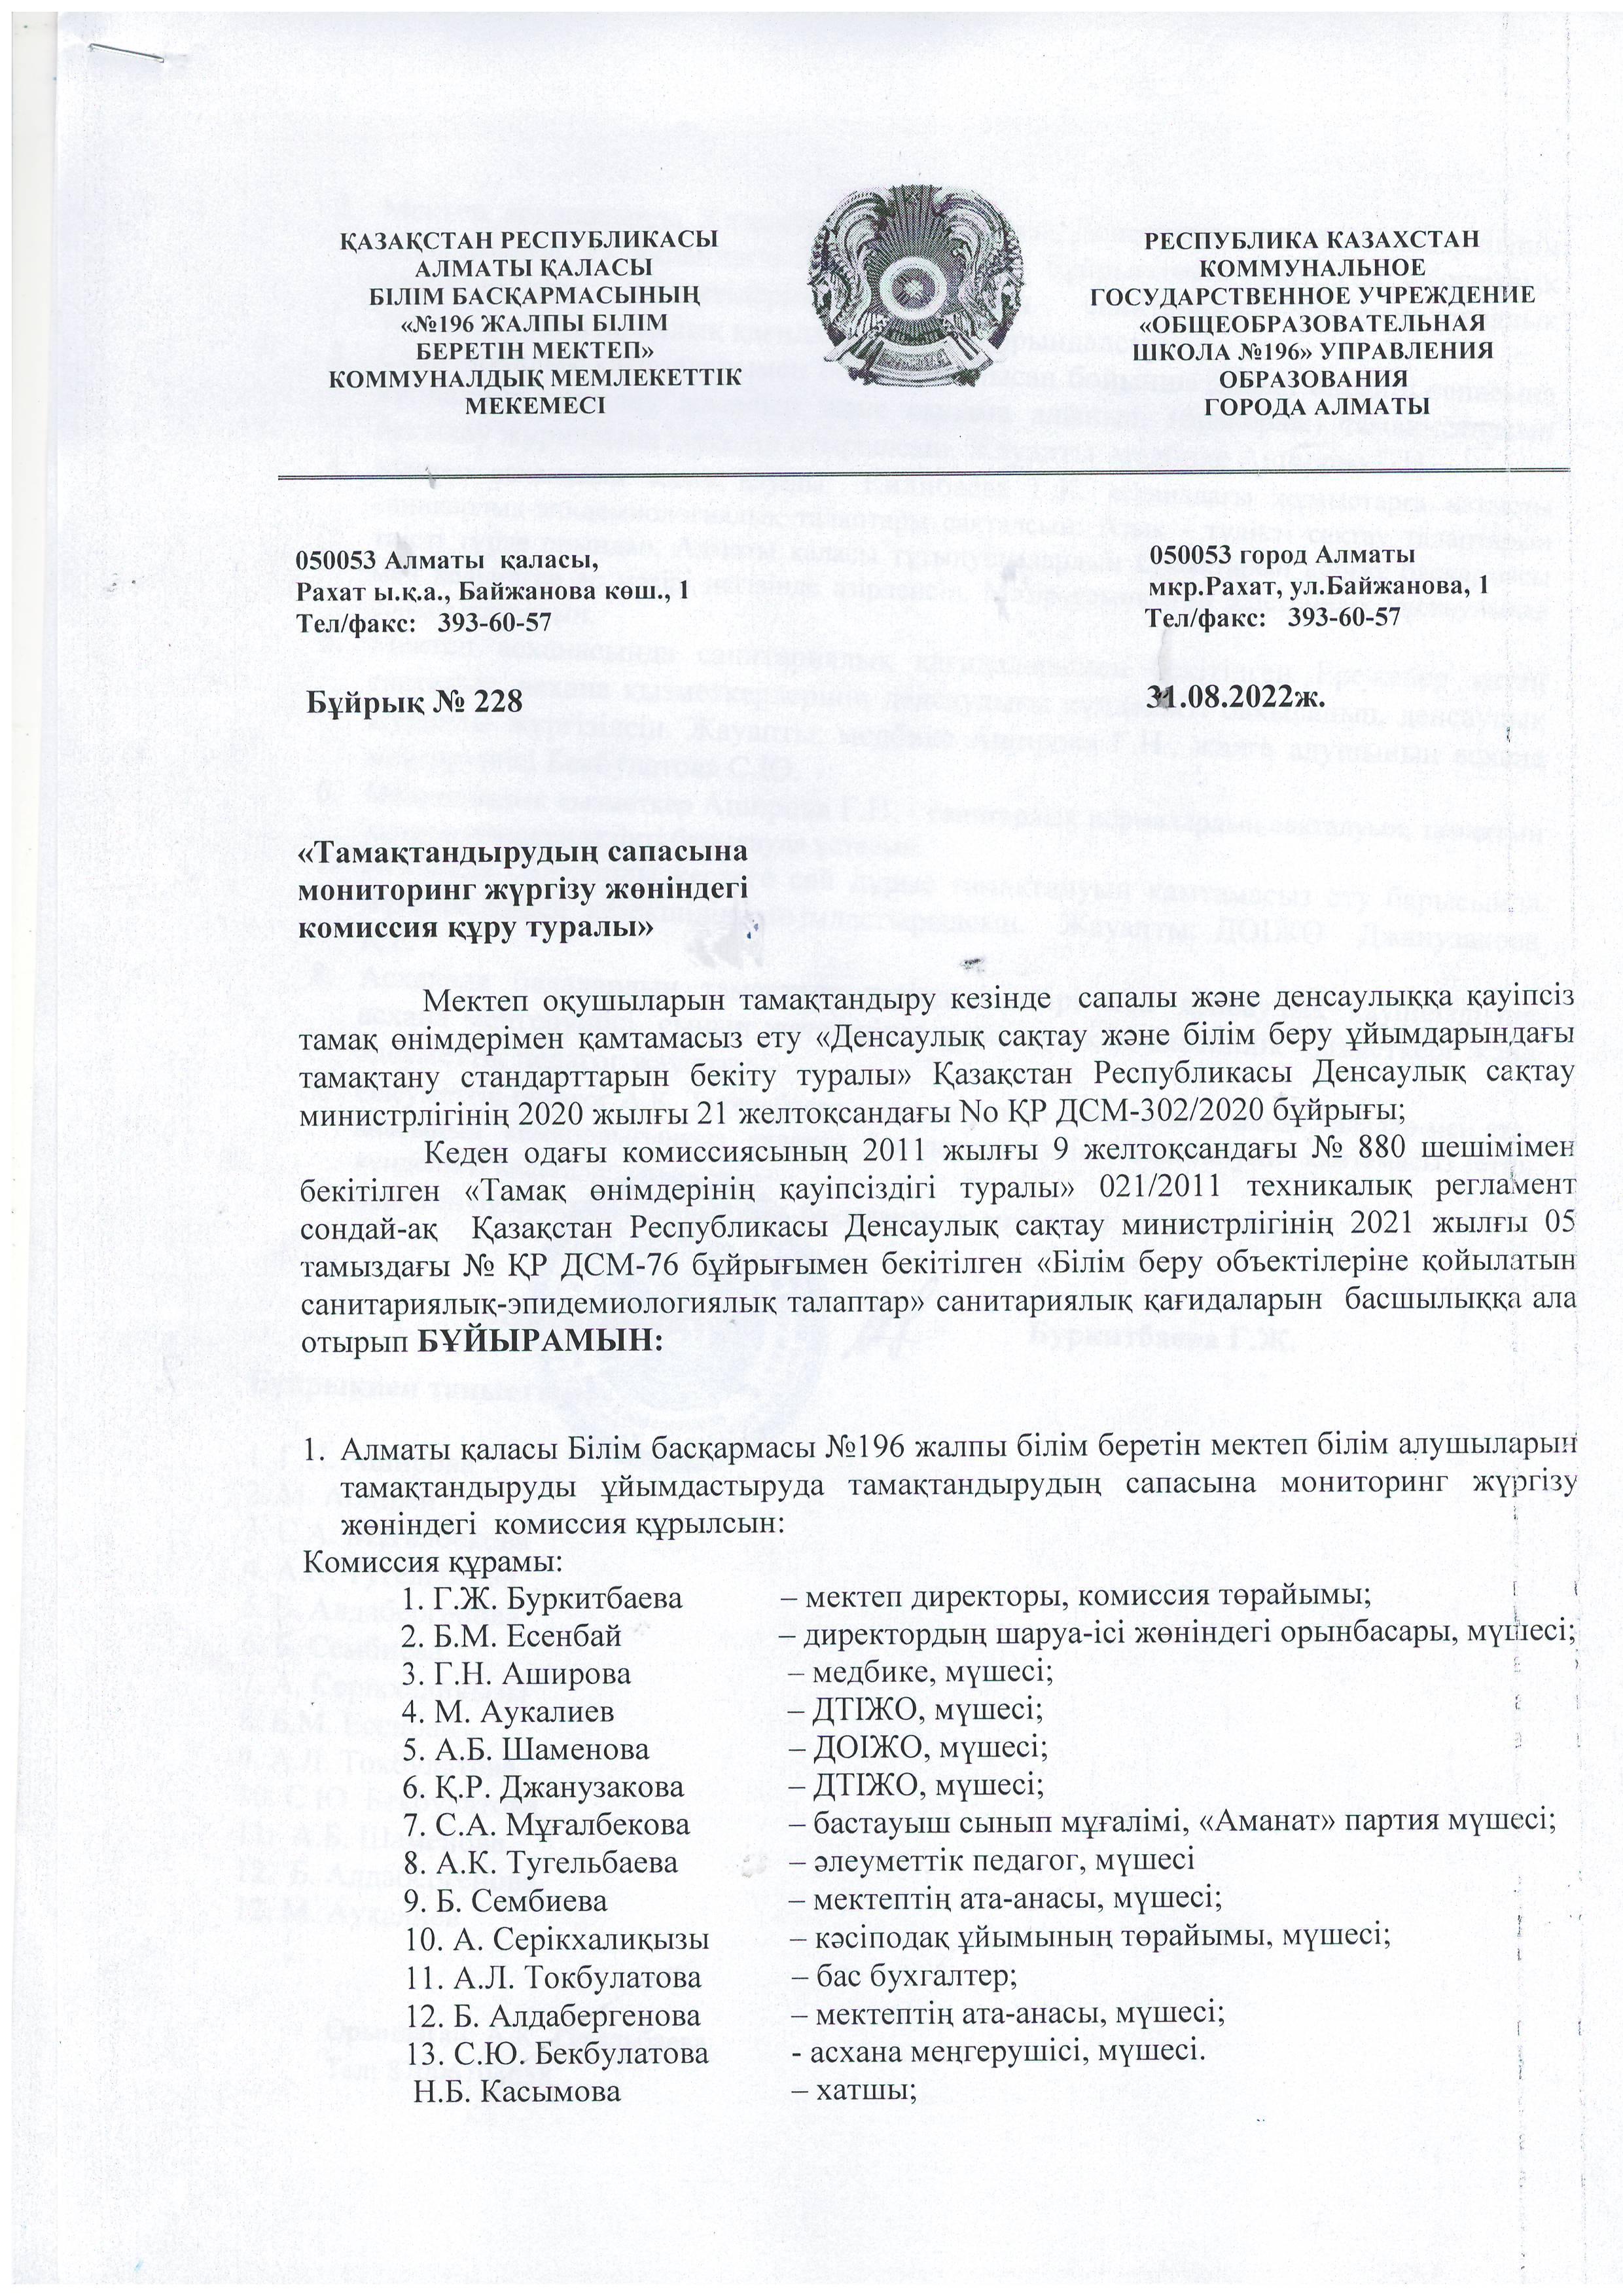 Қазақстан Республикасы Үкіметінің 2022 жылғы 8 тамыздағы № 544 Қаулысы